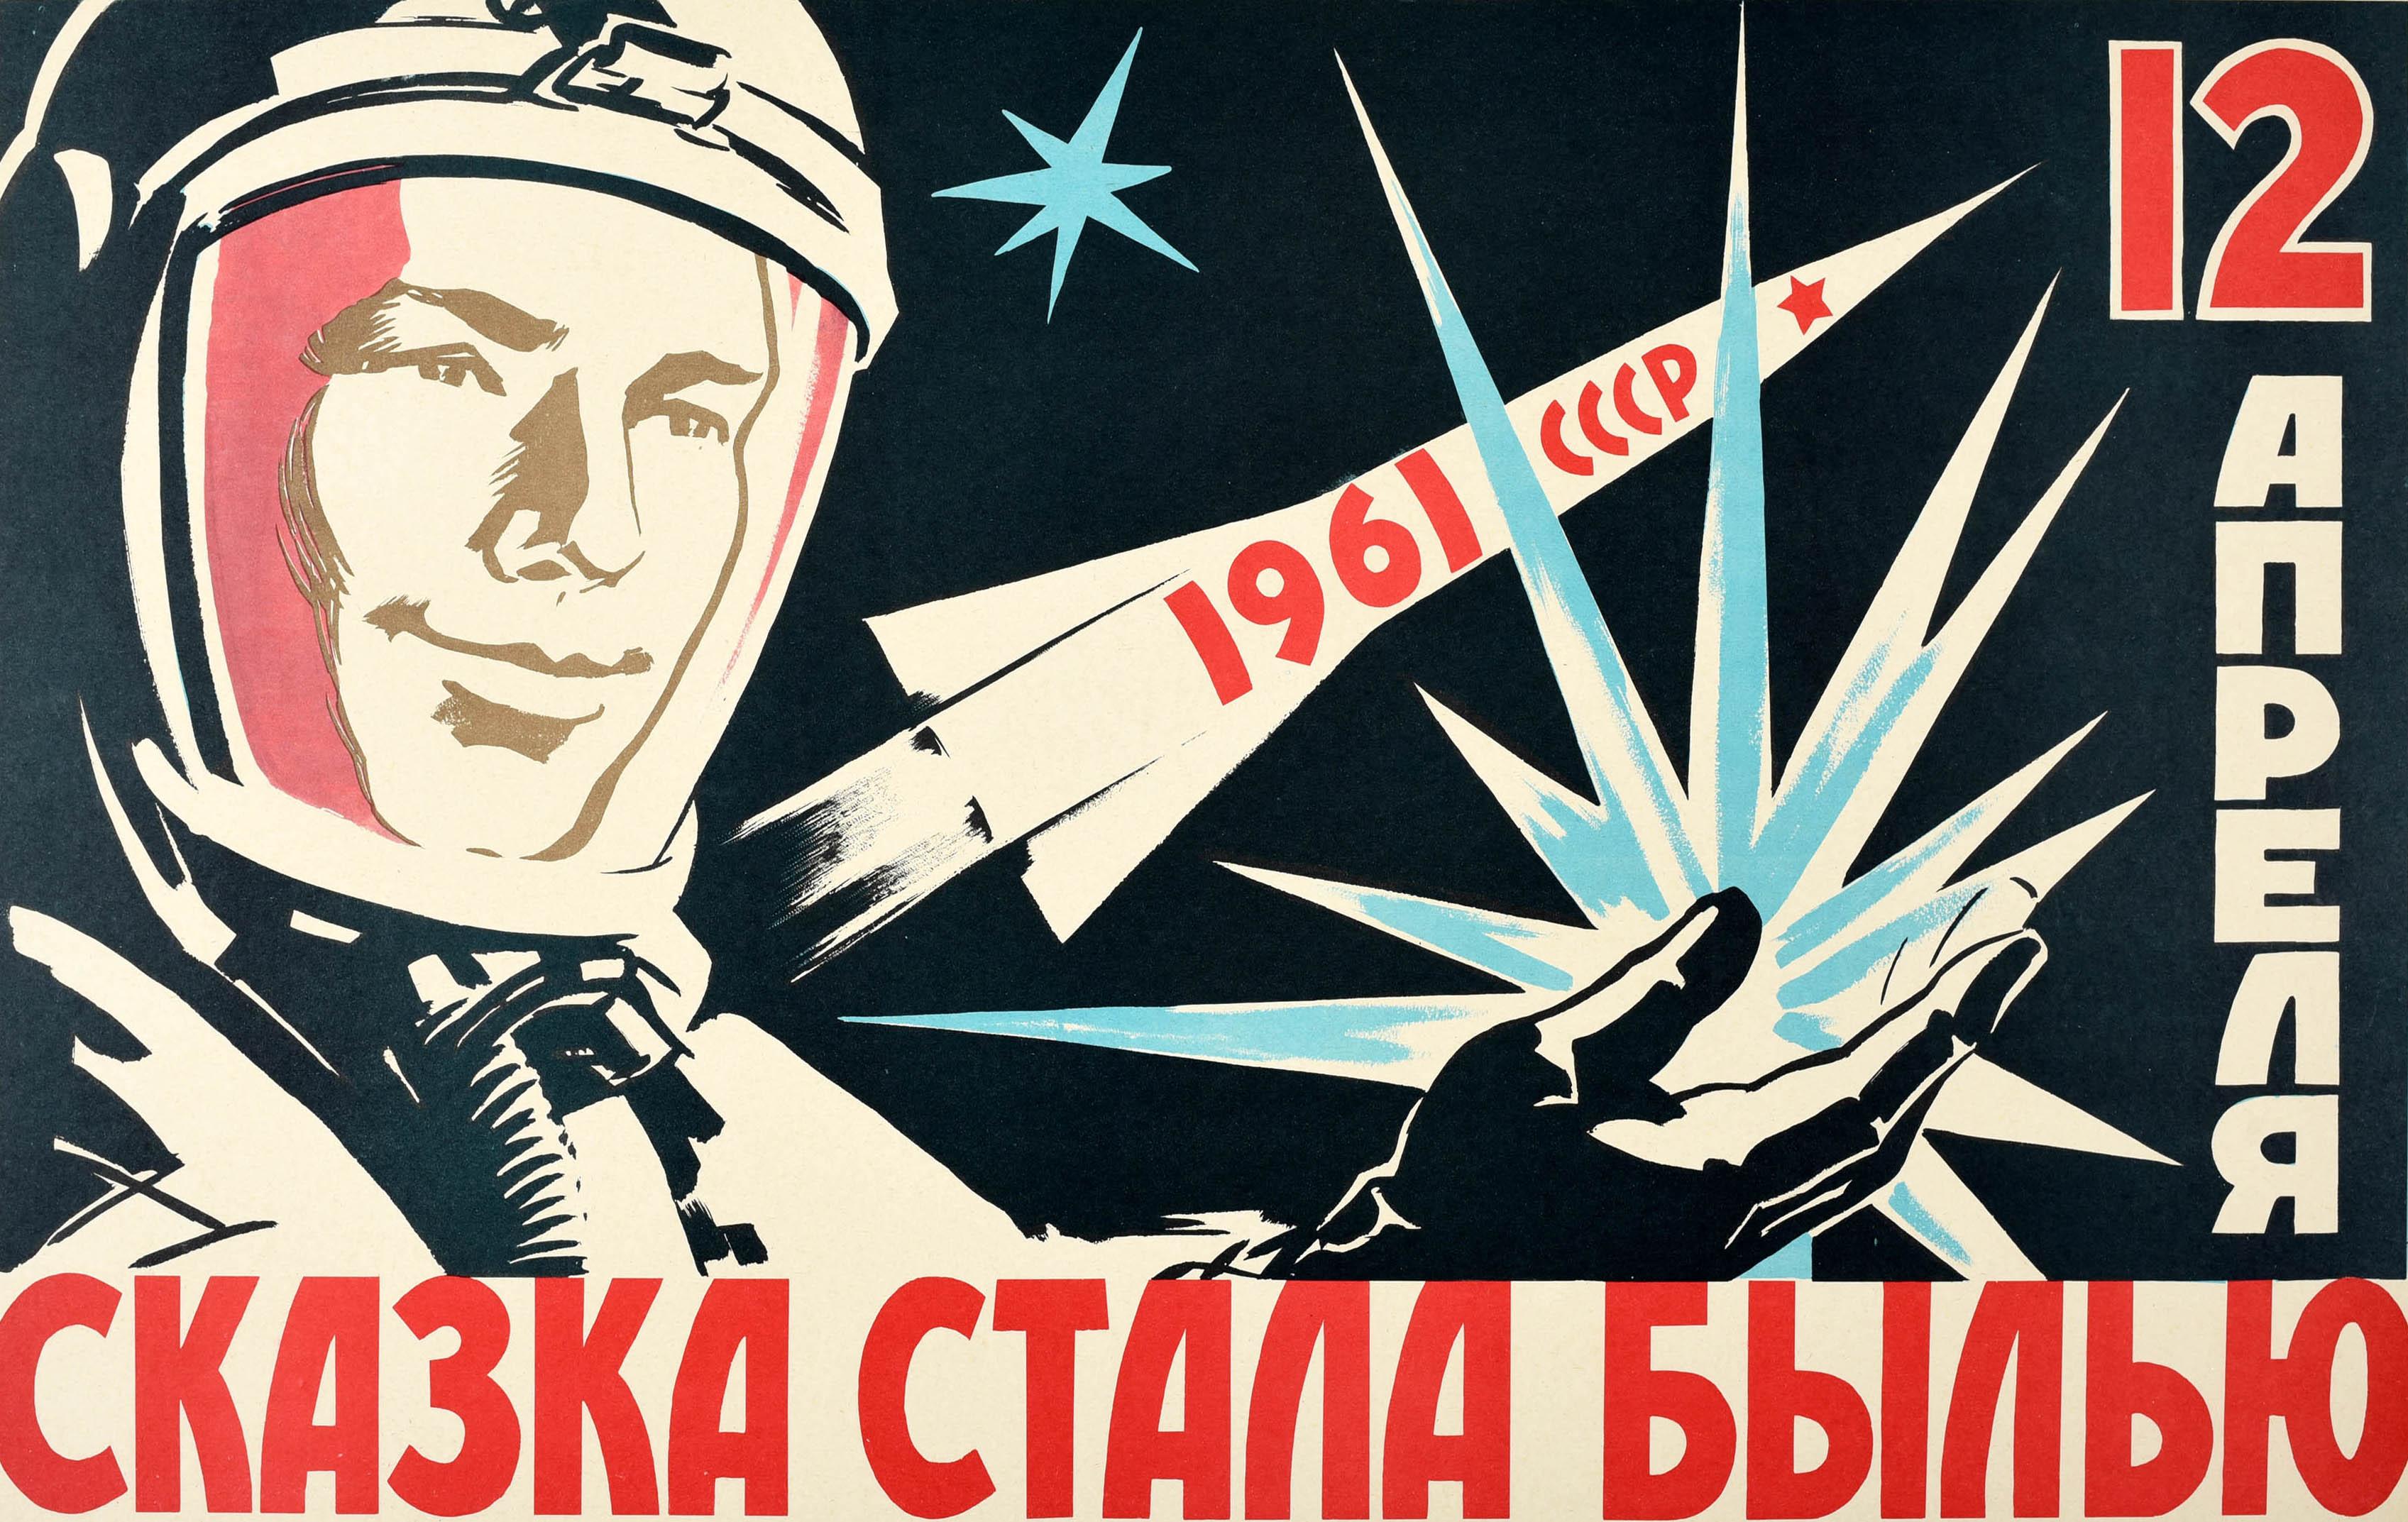 Affiche de propagande soviétique d'époque - Le conte de fées est devenu réalité le 12 avril 1961 - comportant une illustration dynamique sur fond noir de l'espace représentant Youri Gagarine (Youri Alekseyevich Gagarine ; 1934-1968), le pilote et